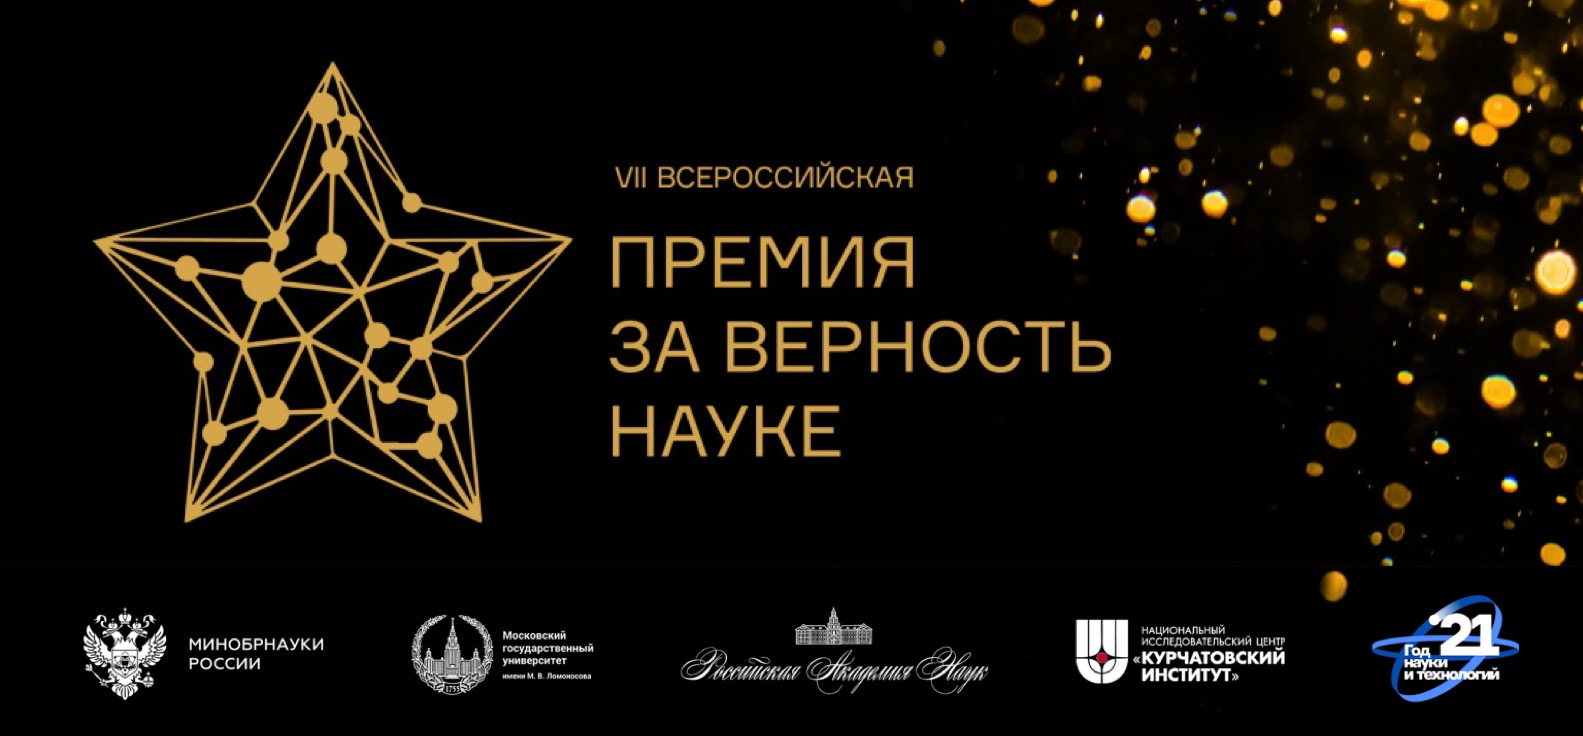 Успехи Московского университета отмечены в двух номинациях VII Всероссийской премии "За верность науке"